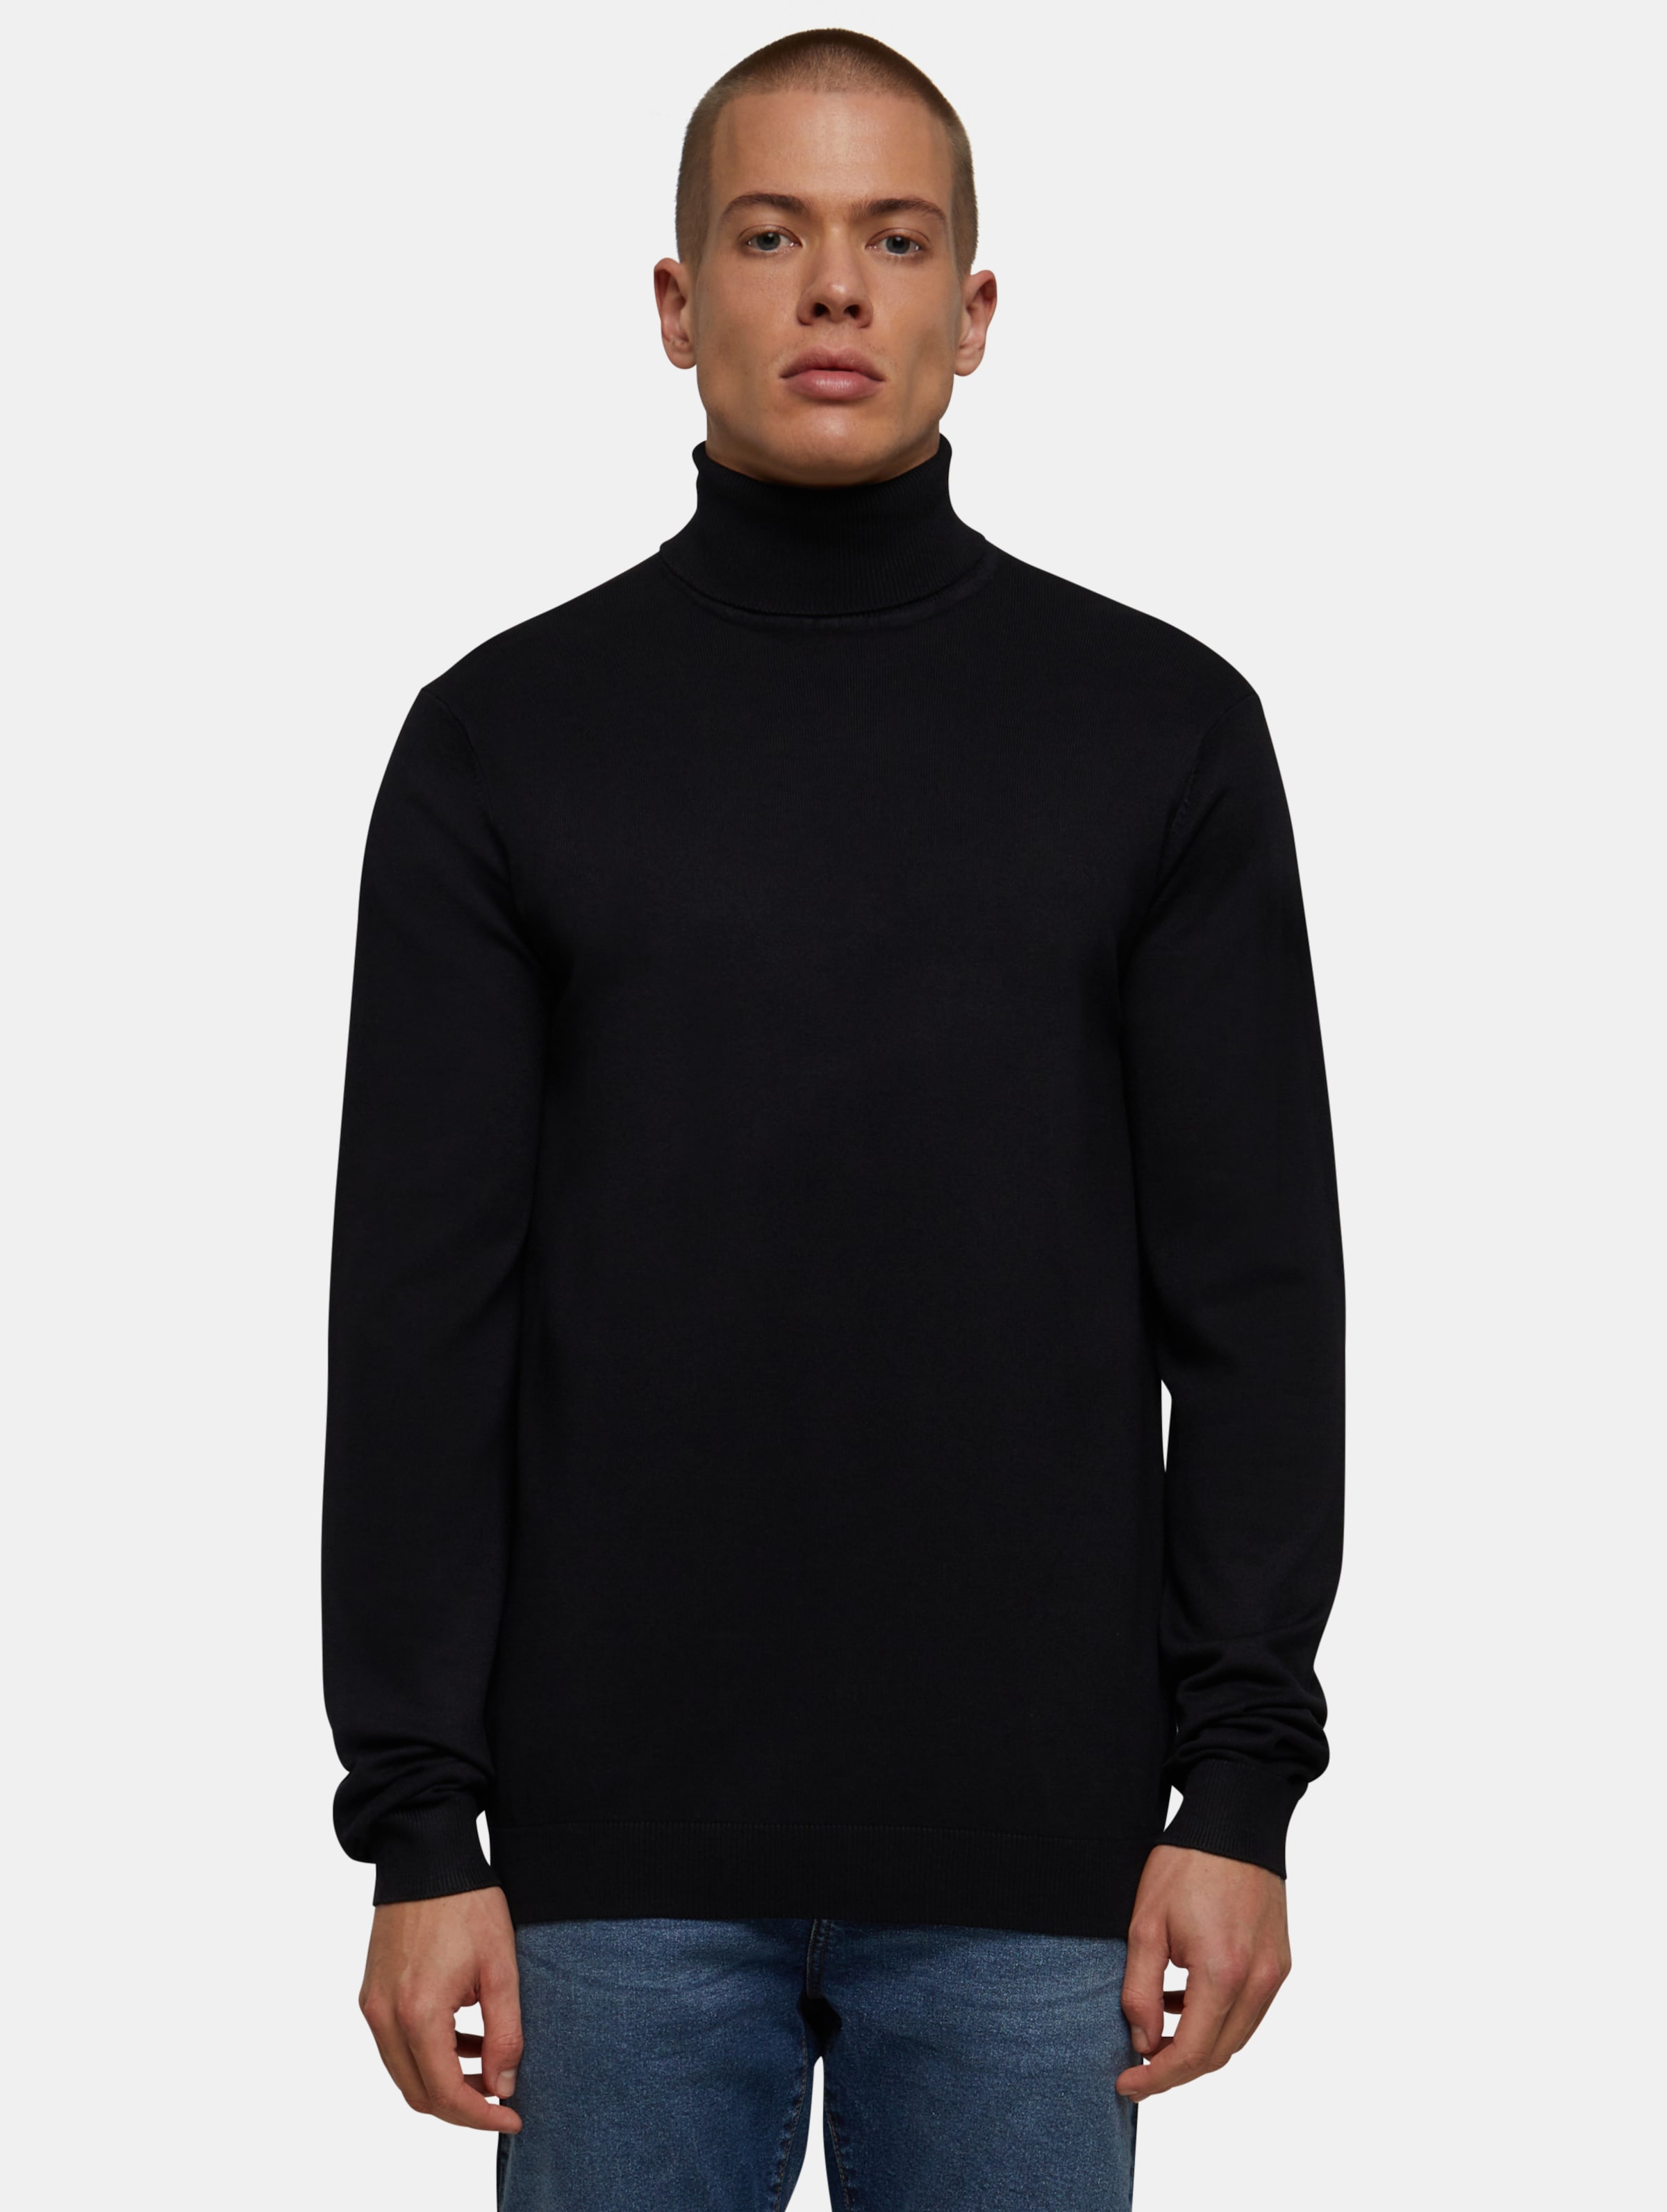 Urban Classics - Knitted Turtleneck Sweater - 4XL - Zwart